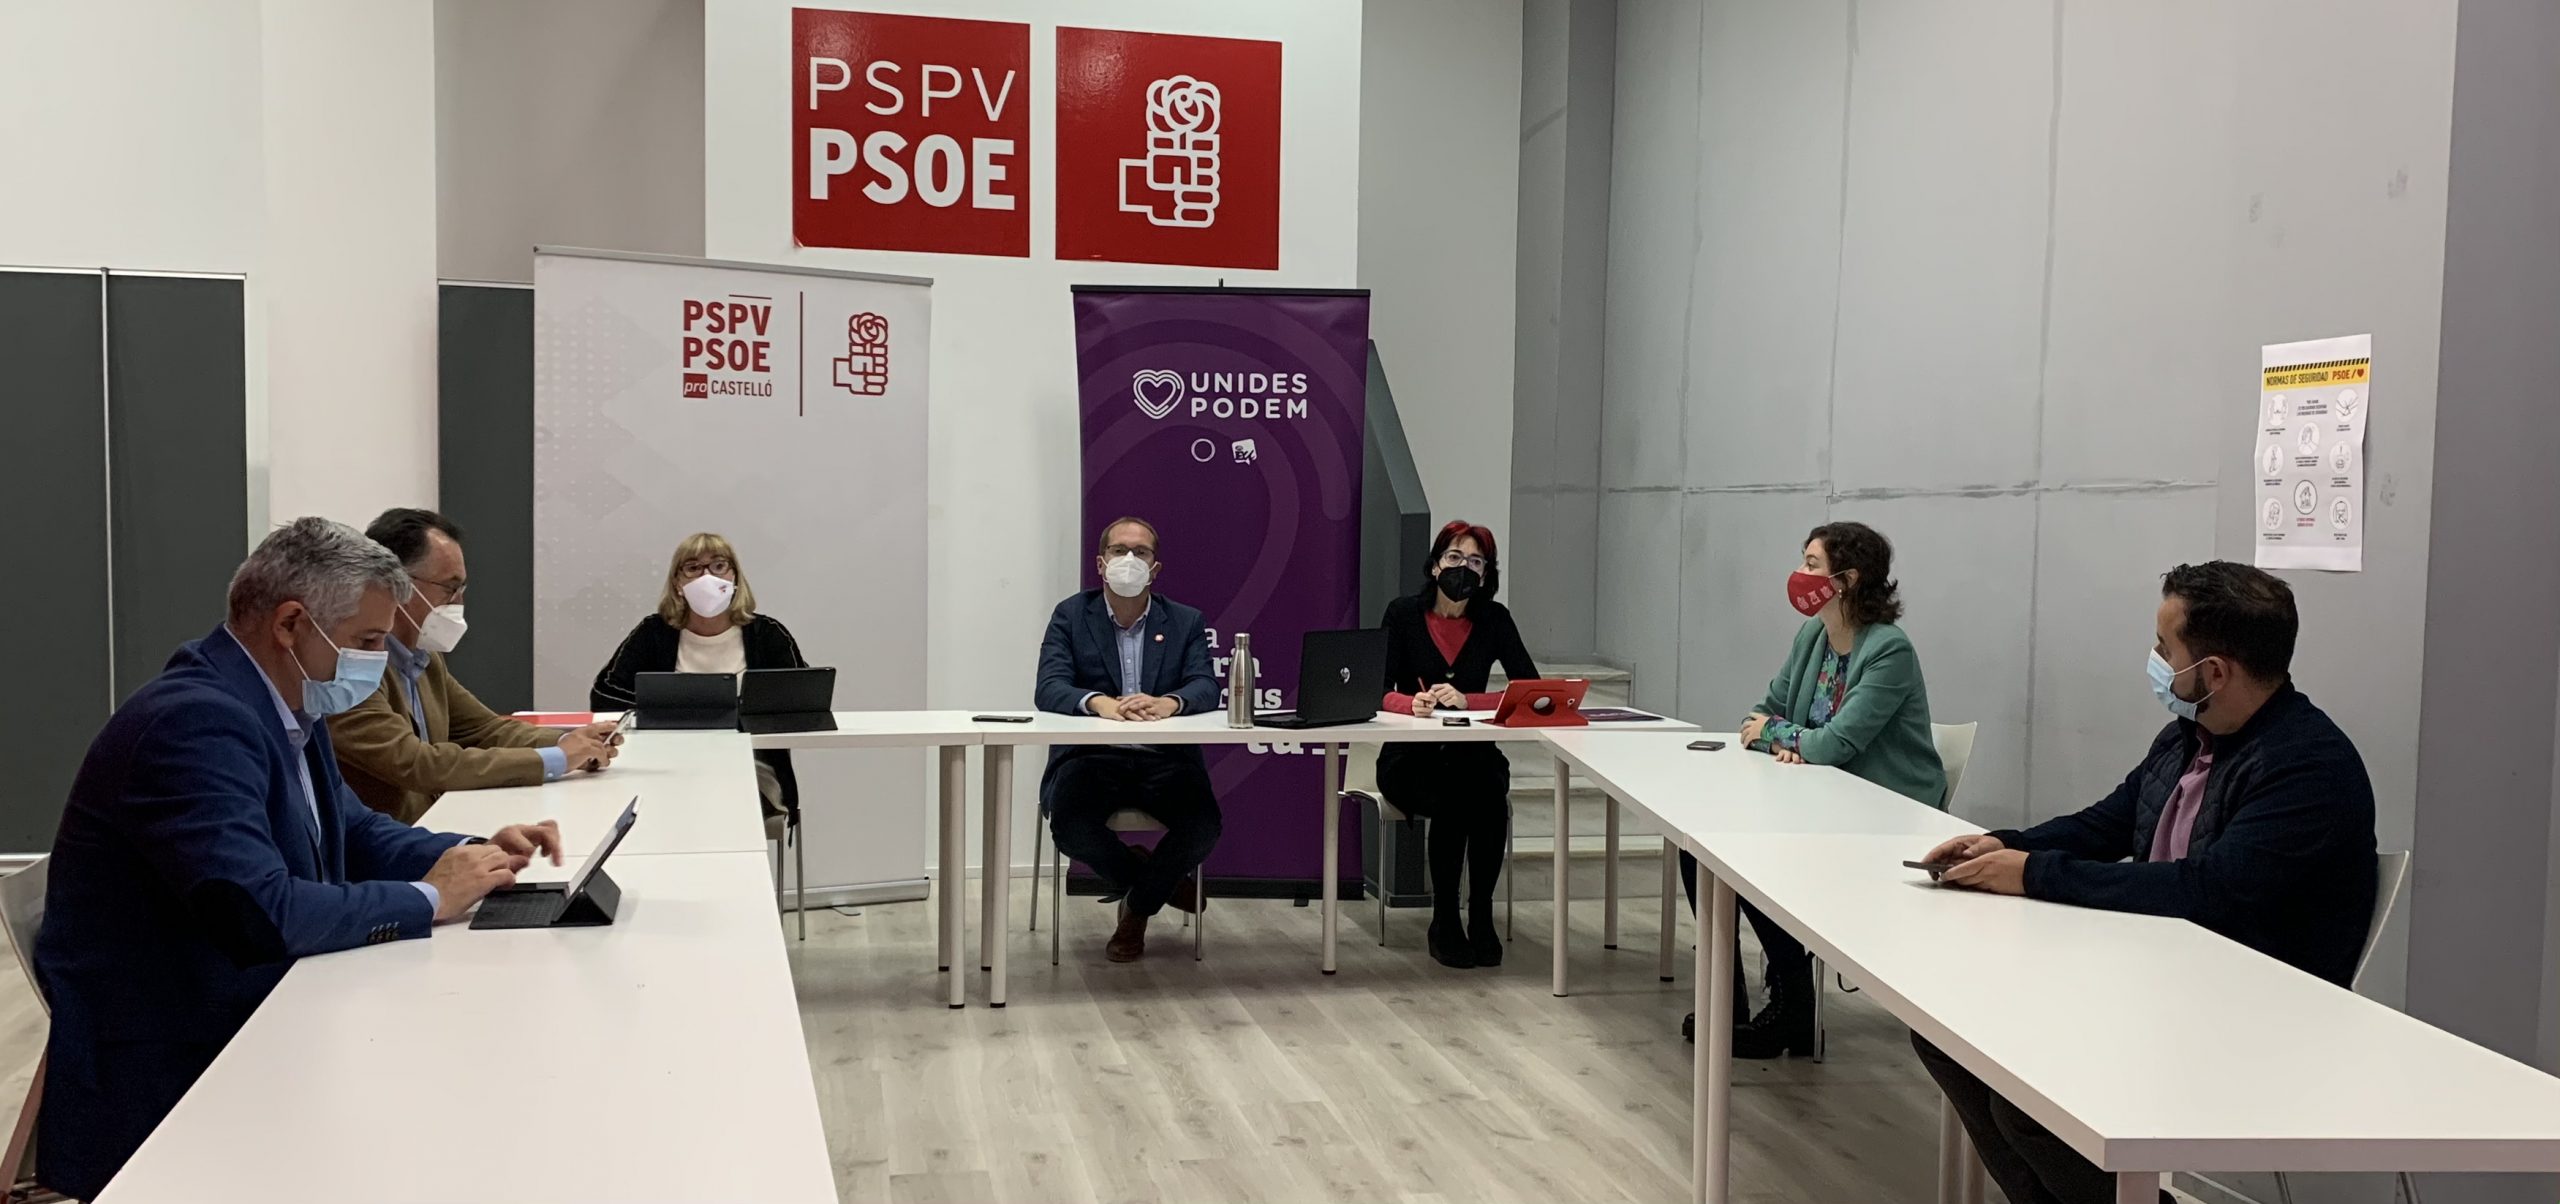 PSPV-PSOE y Unides Podem valoran el incremento de las inversiones en un 83% para la provincia de Castelló frente a la austeridad y los recortes del PP